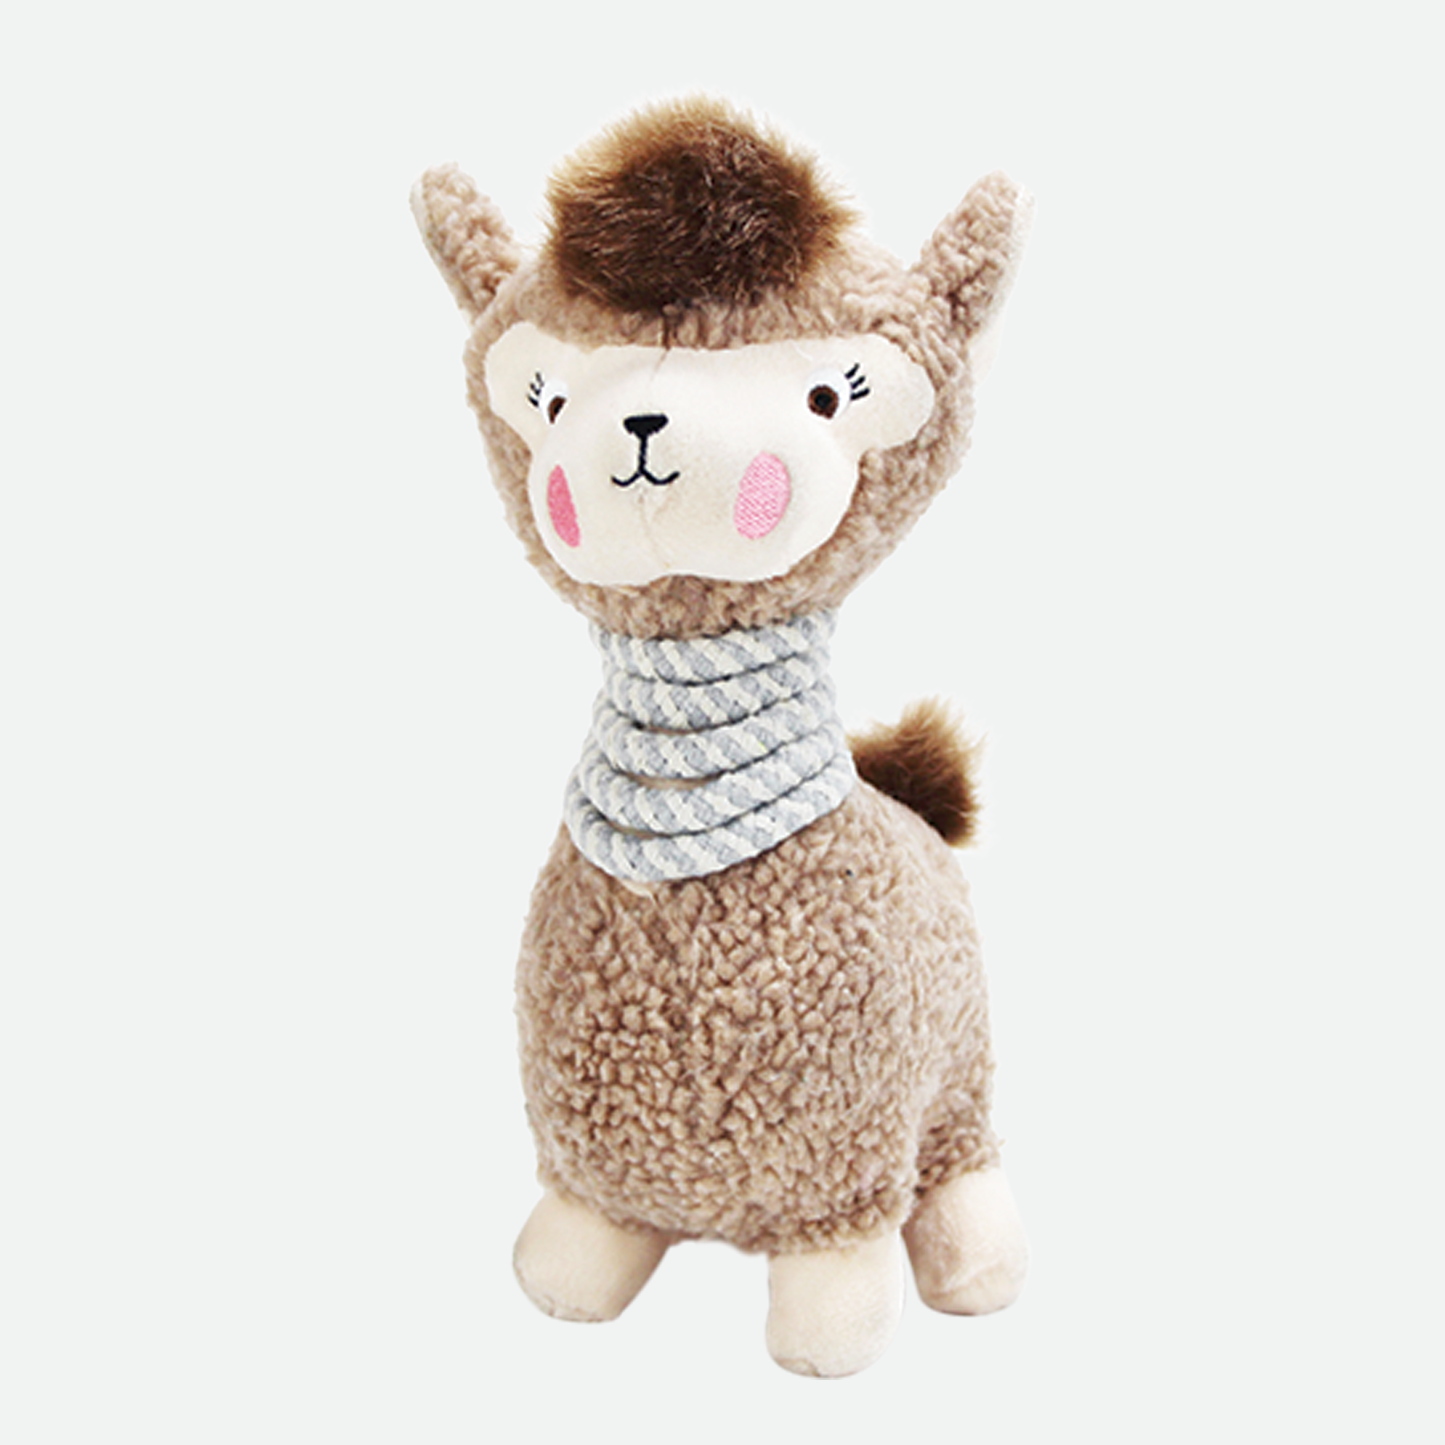 Plush toy for dog, llama style